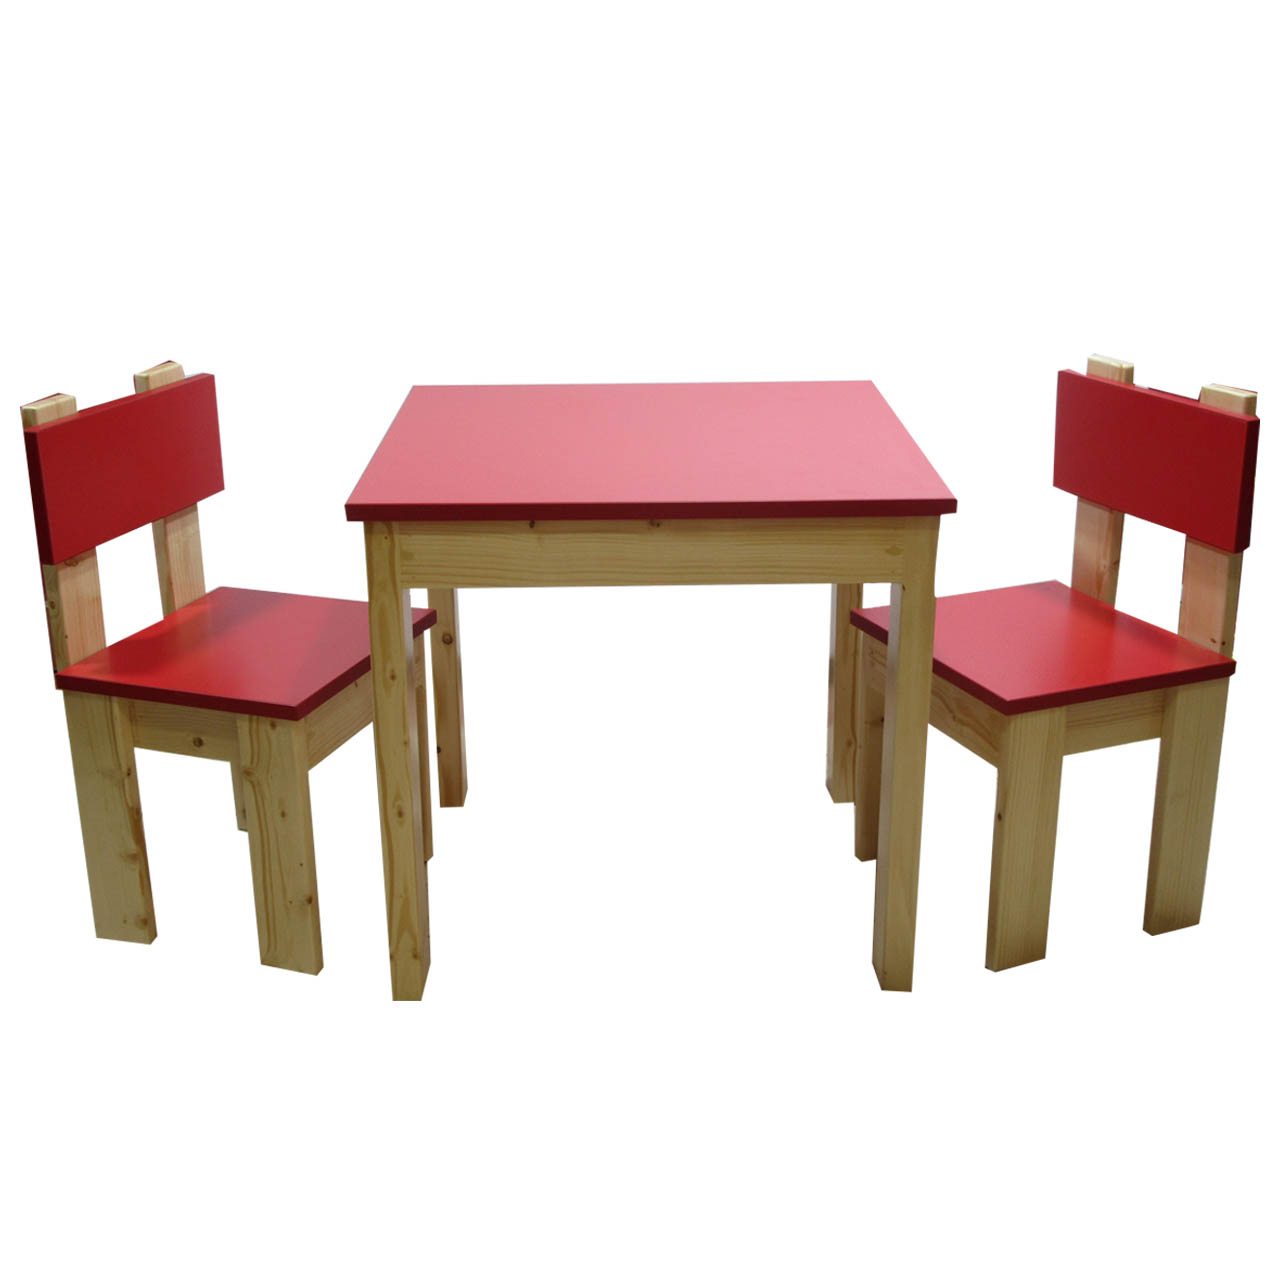 ست میز و صندلی کودک ایلیا مدل A003